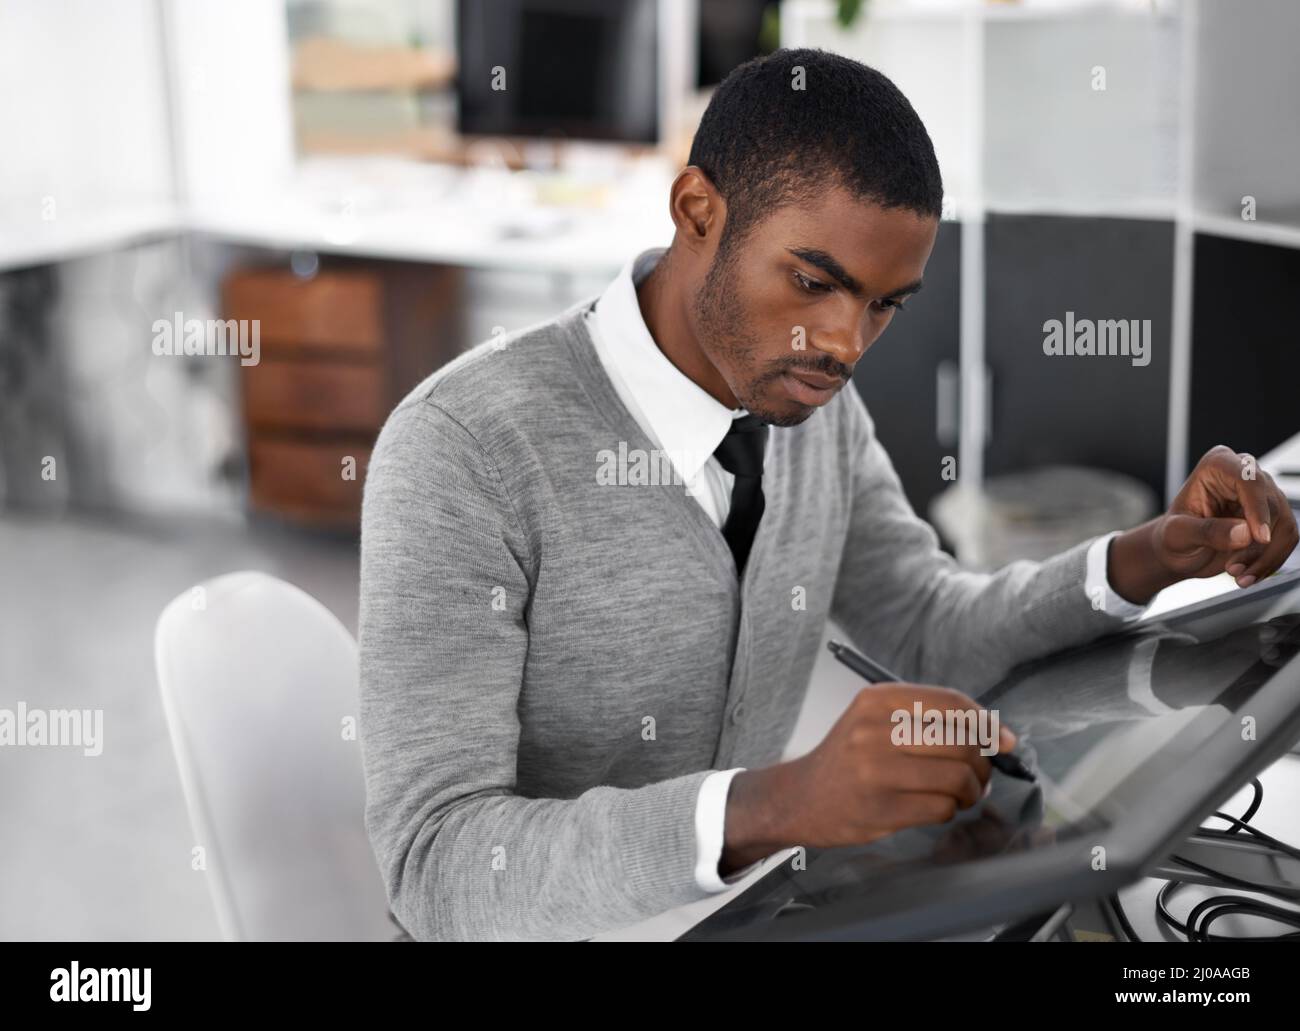 La technologie intelligente facilite tout. Un jeune homme travaillant sur un grand écran tactile. Banque D'Images